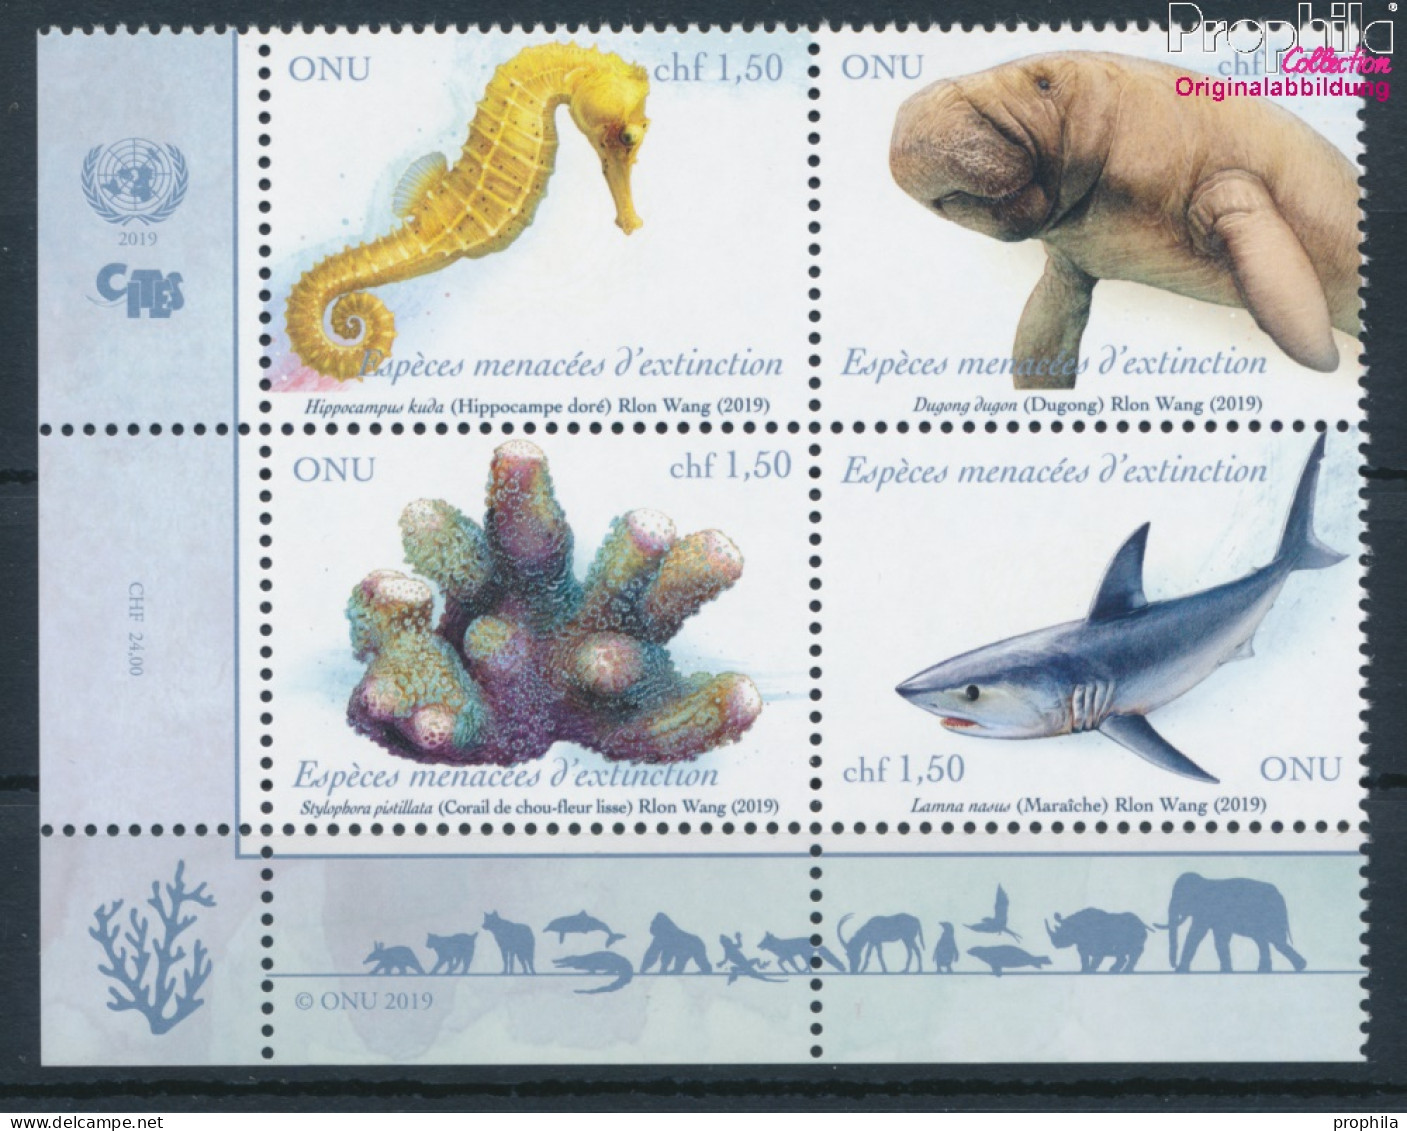 UNO - Genf 1074-1077 Viererblock (kompl.Ausg.) Postfrisch 2019 Gefährdete Arten (10194049 - Unused Stamps